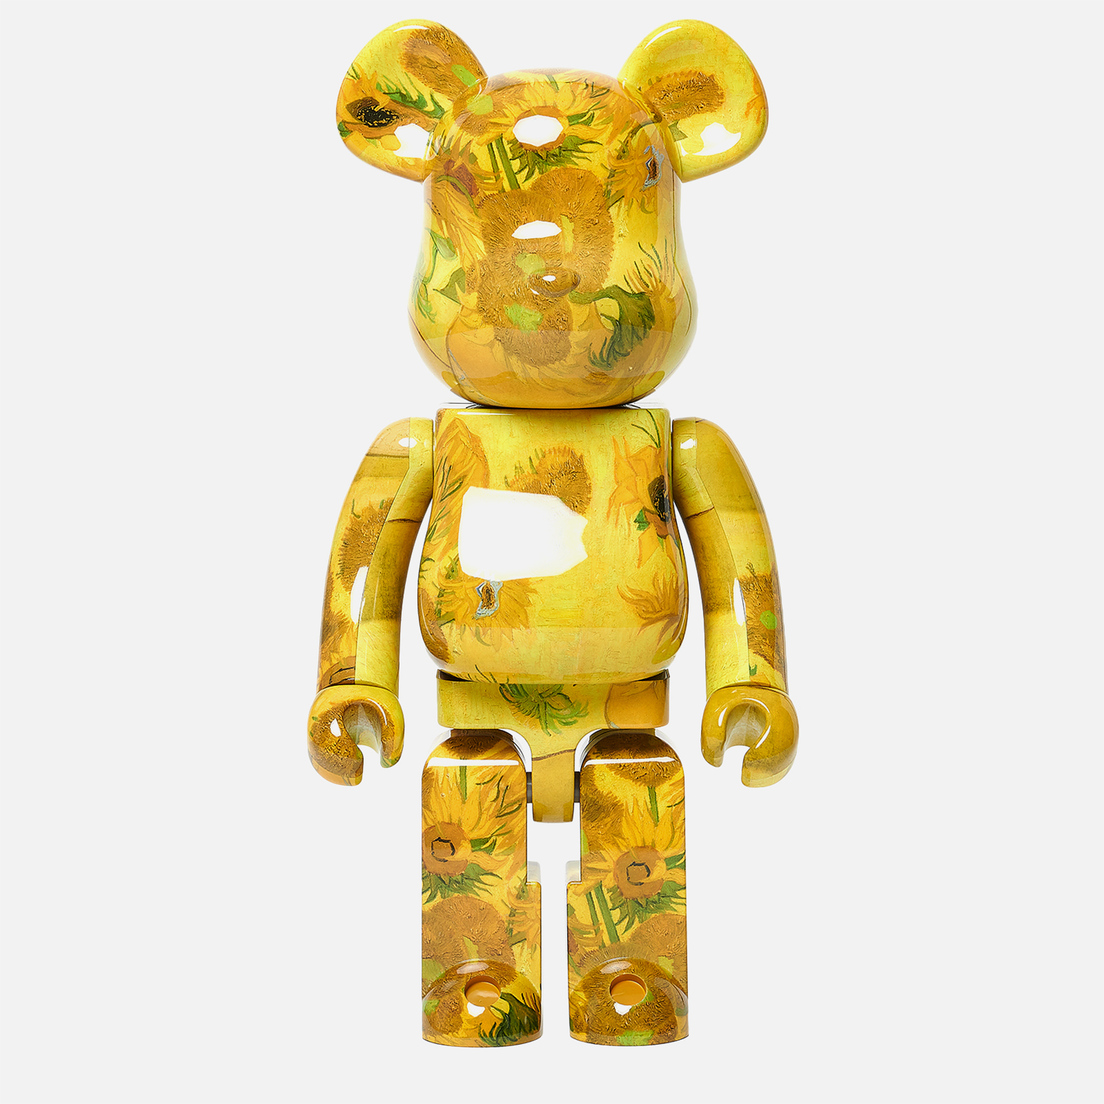 Medicom Toy Игрушка Van Gogh Sunflowers 1000%